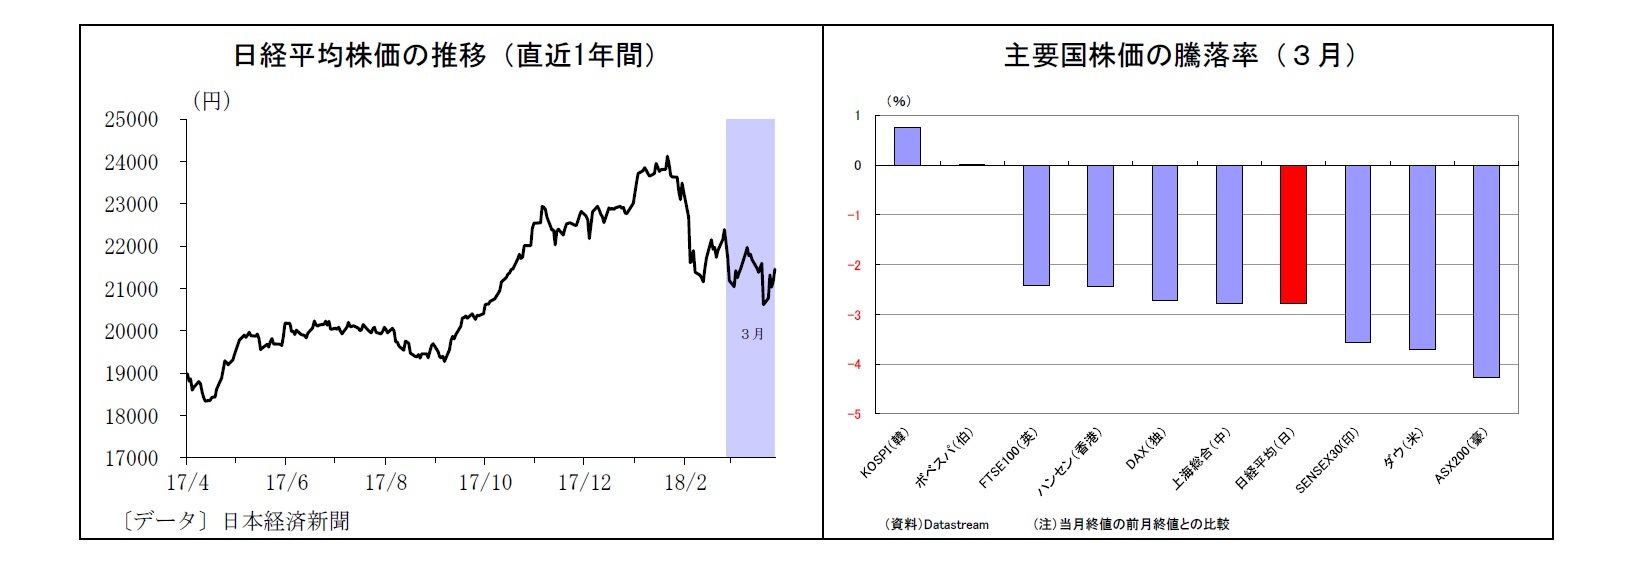 日経平均株価の推移（直近1年間）/主要国株価の騰落率（３月）